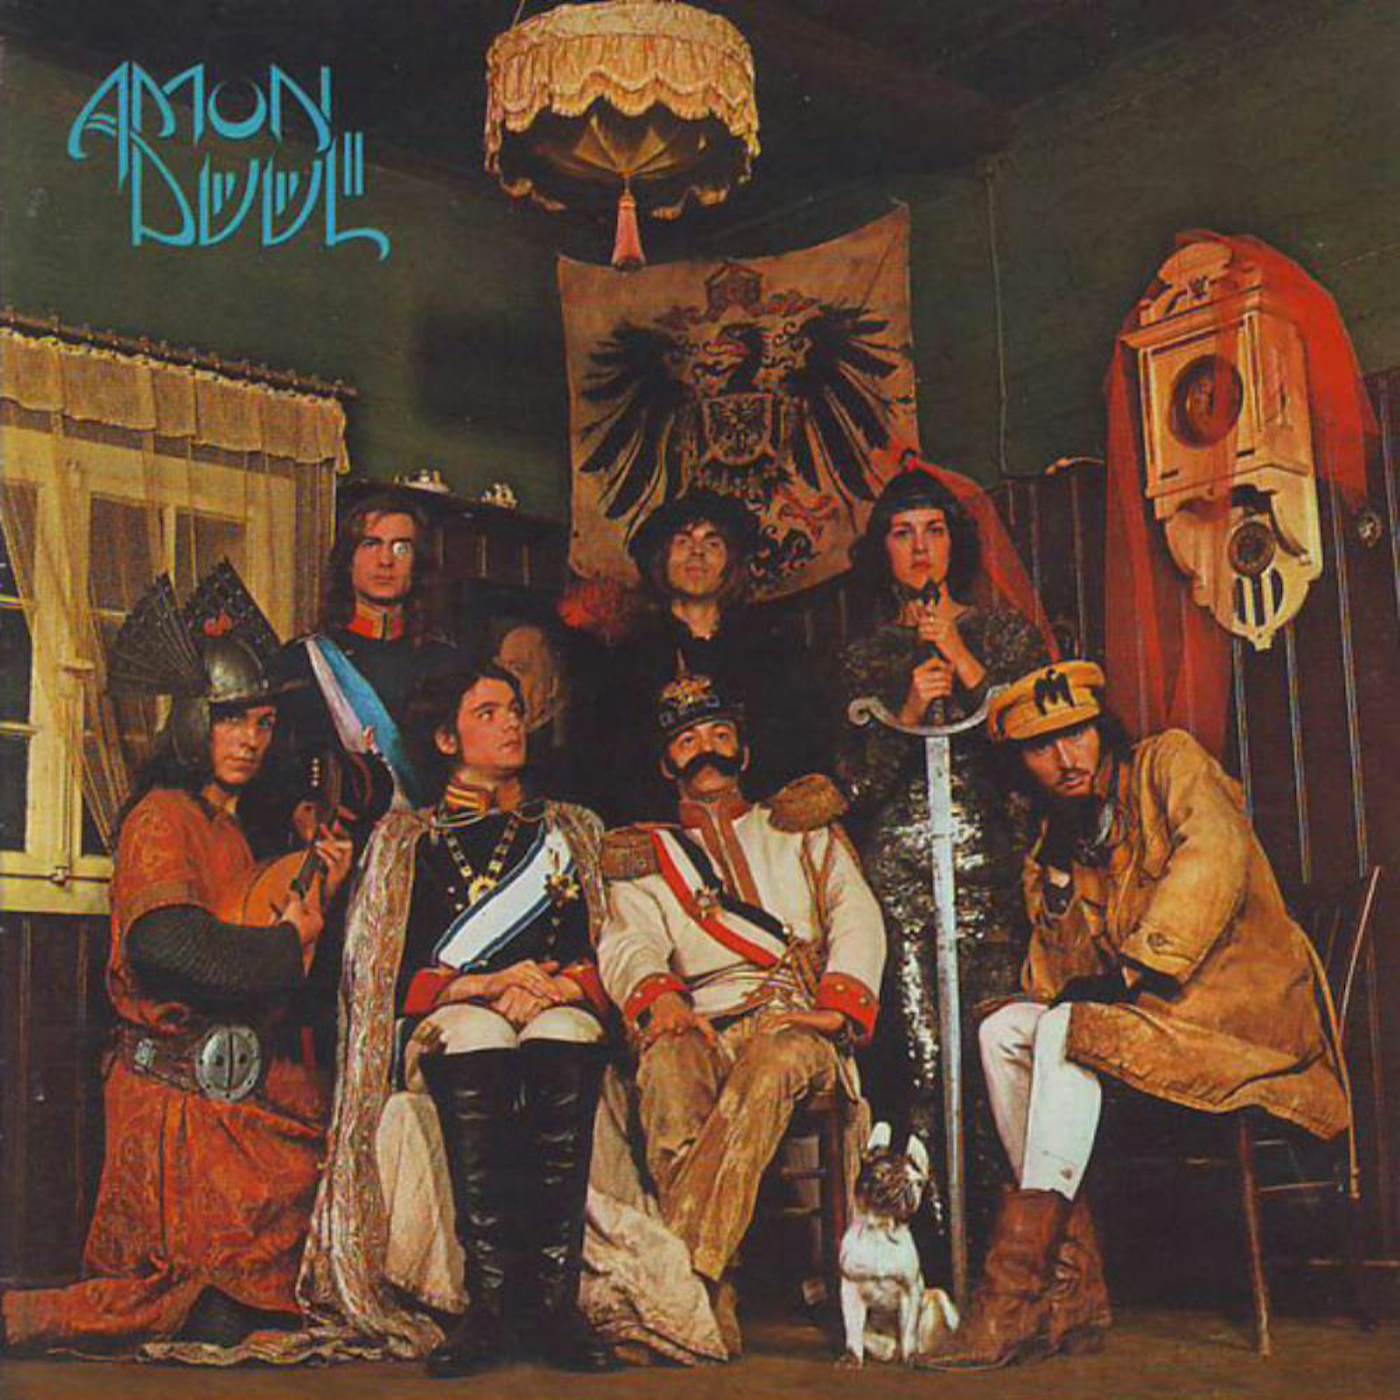 Amon Düül II Made In Germany Vinyl Record